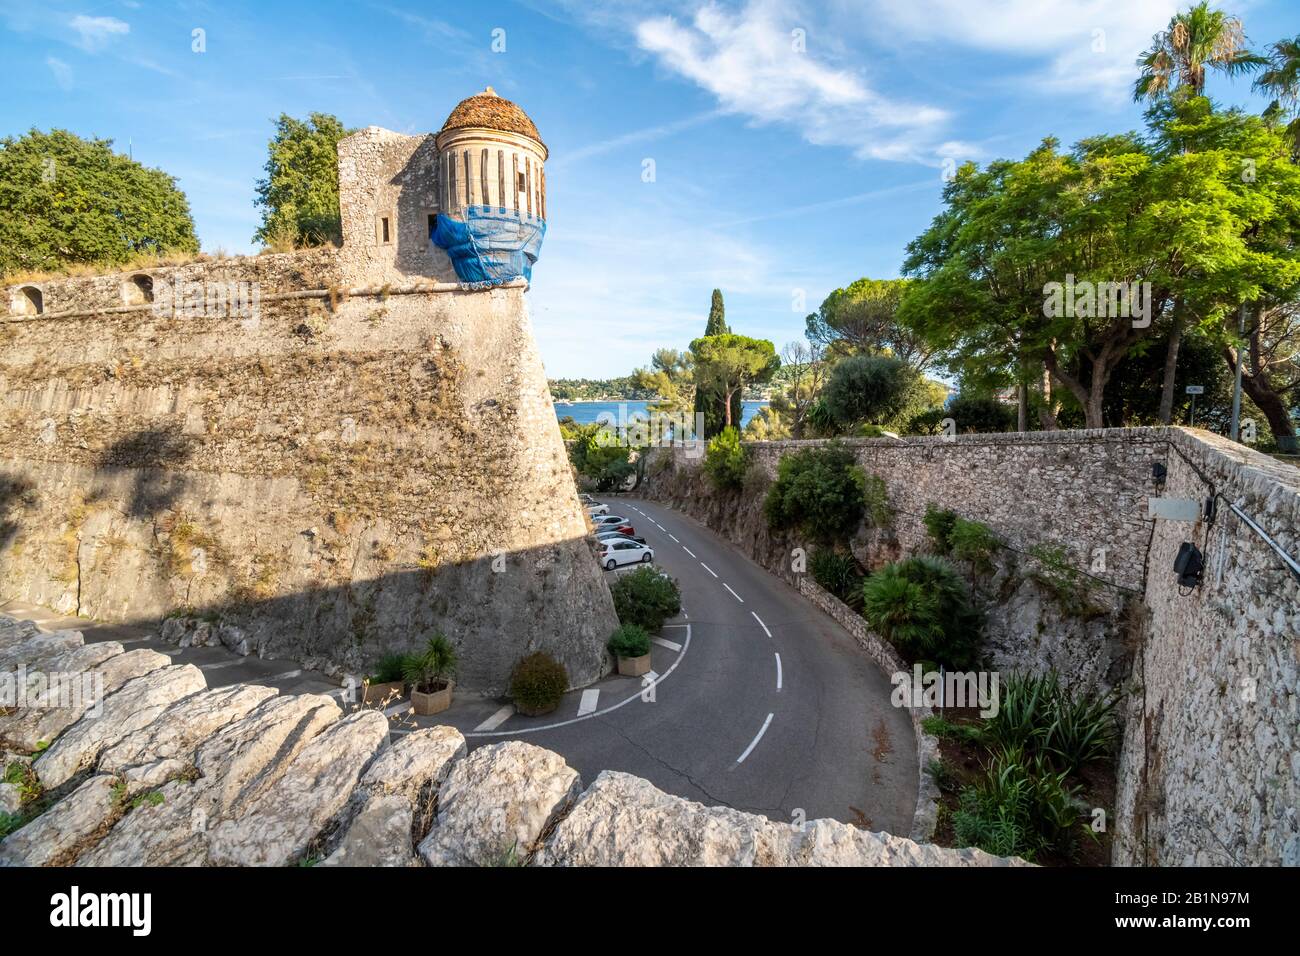 L'ancienne Citadelle Saint-Elme, ou Citadelle de la forteresse d'Elmo le long de la côte méditerranéenne à la ville de Villefranche-sur-Mer, France. Banque D'Images